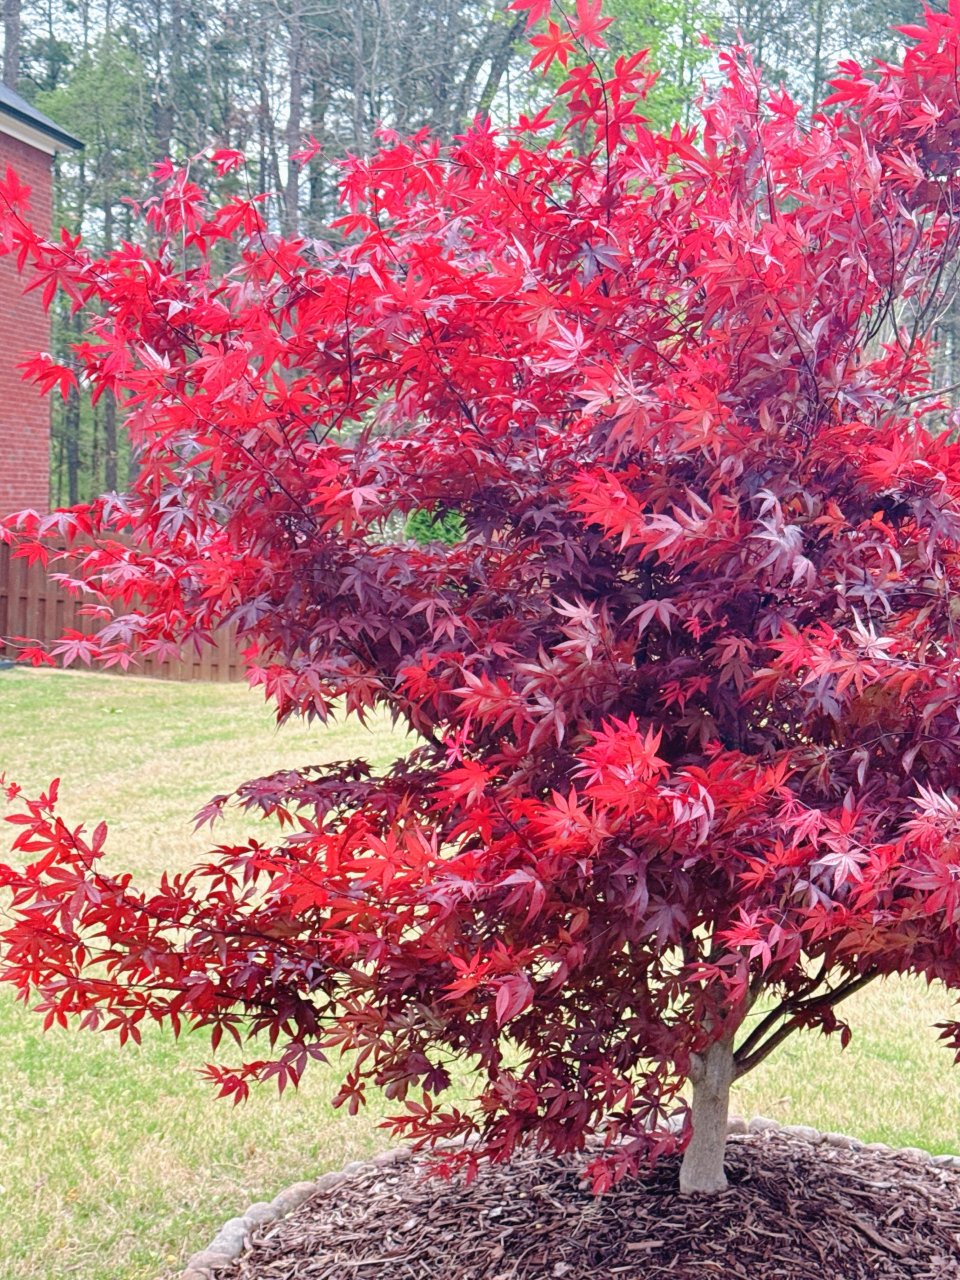 日本枫叶树 喜欢这种红色叶子的...